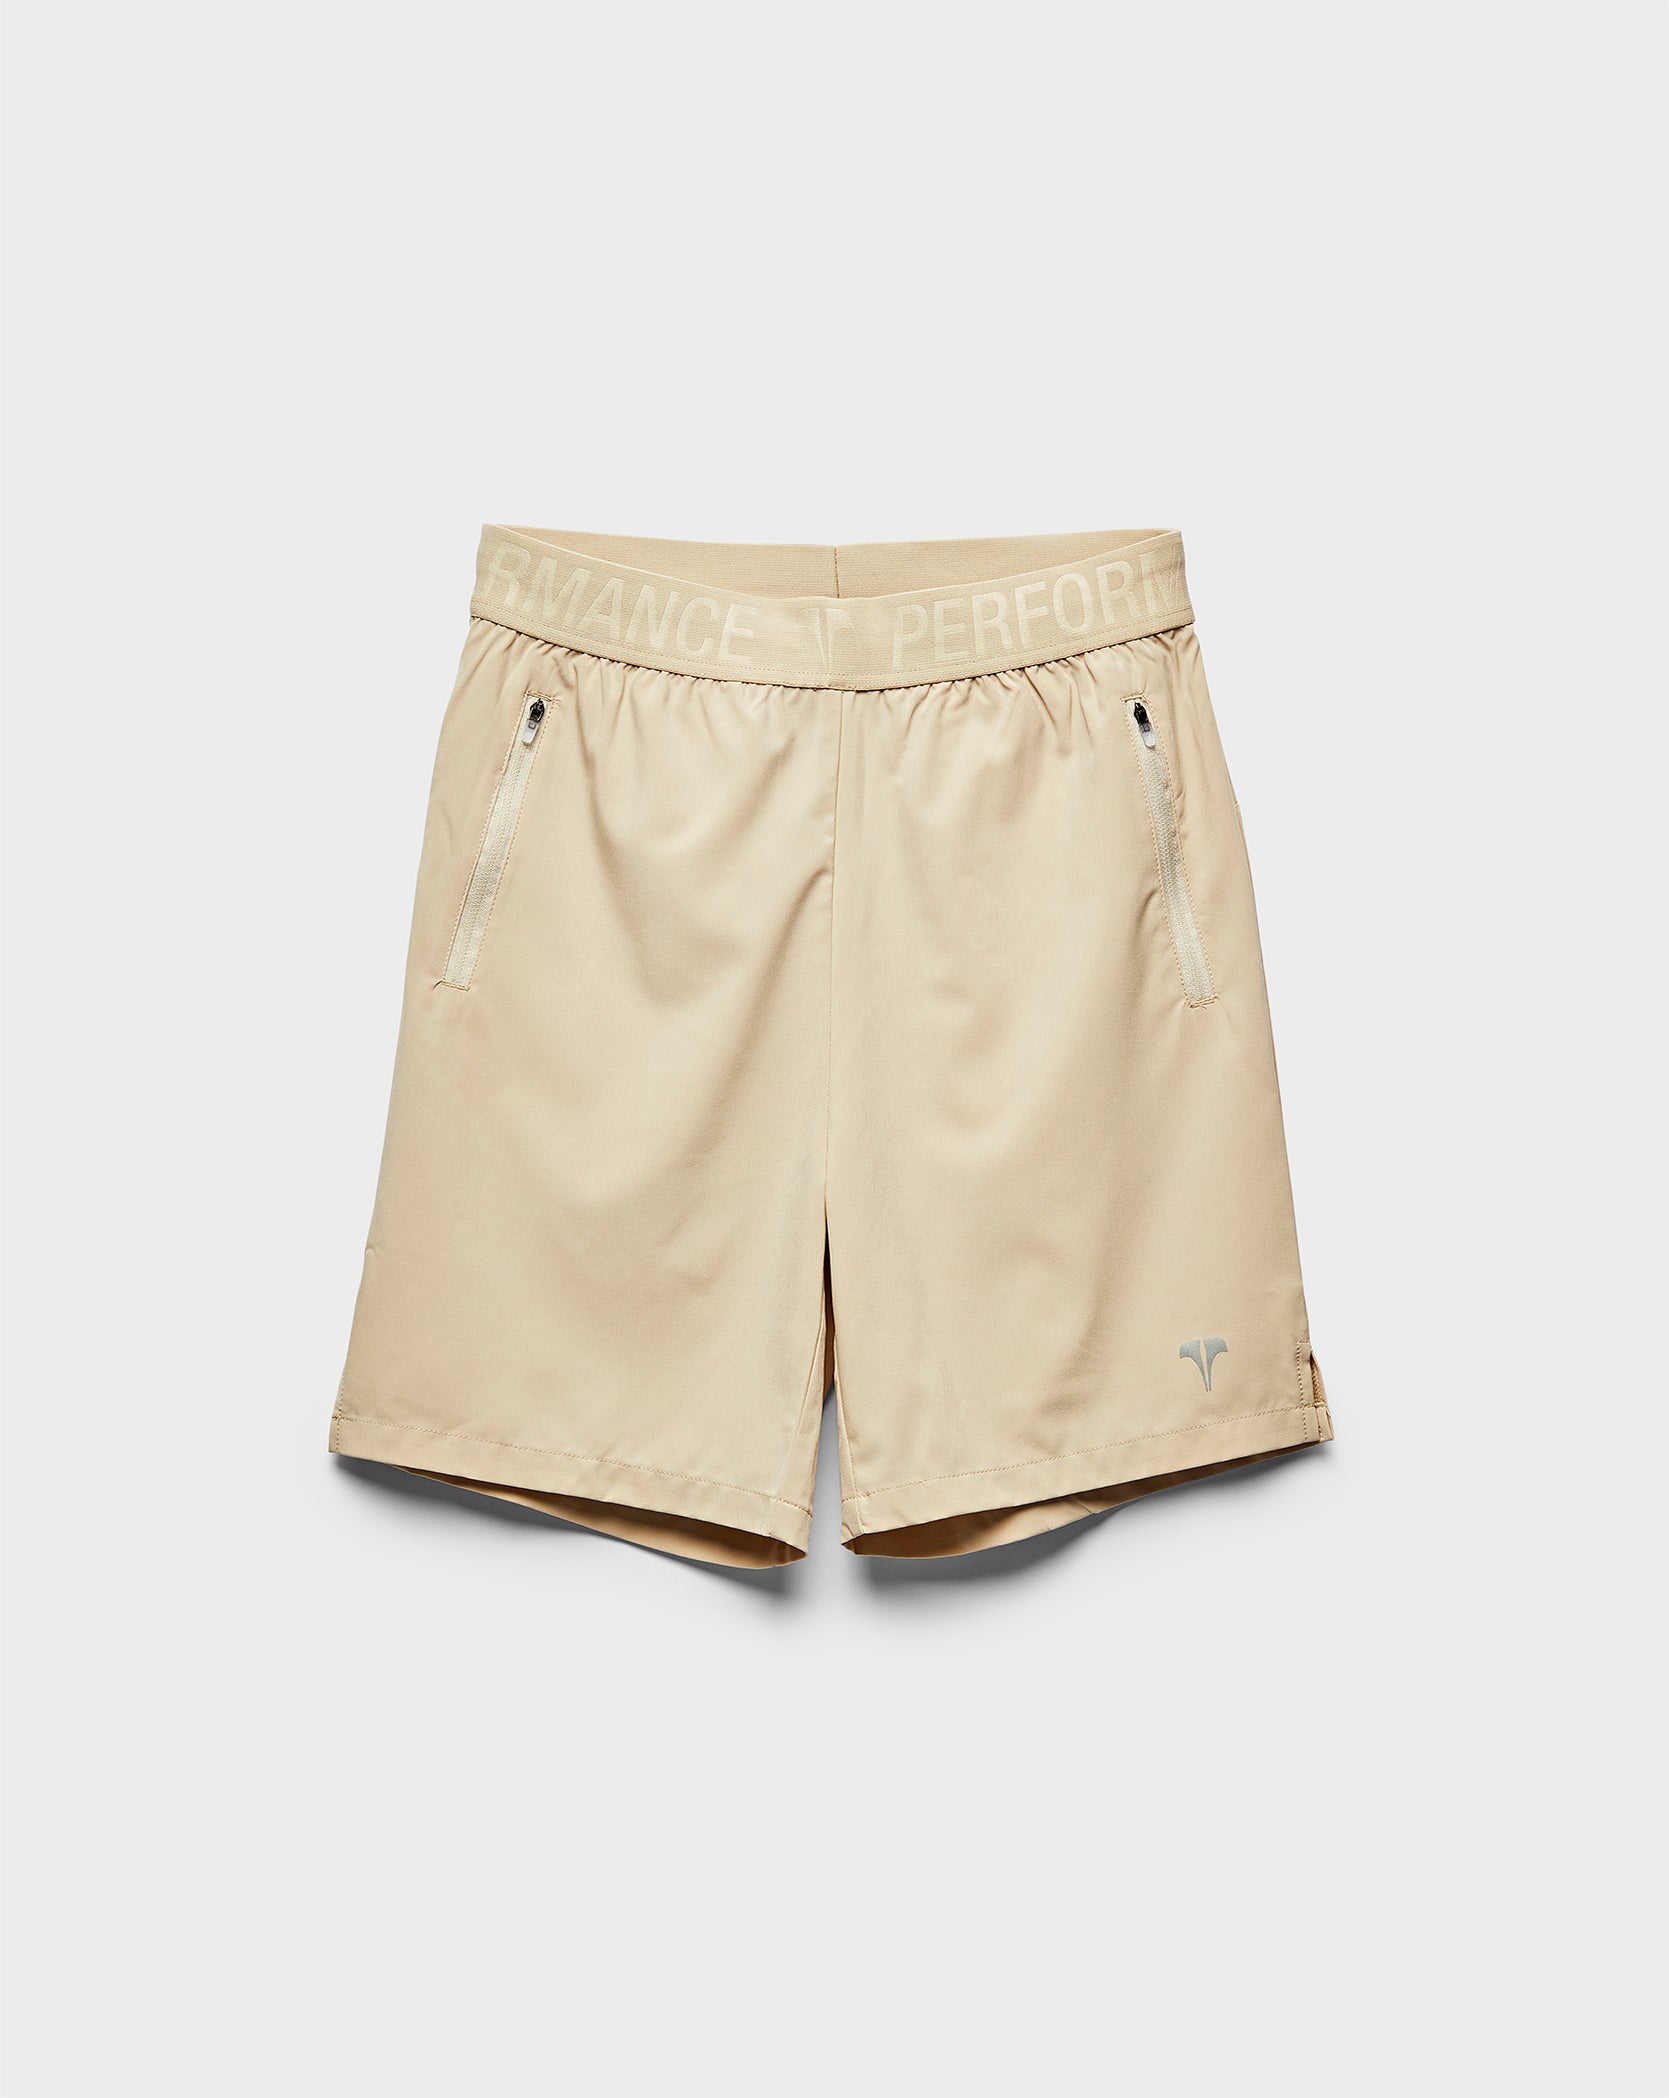 Twinzz active beige shorts